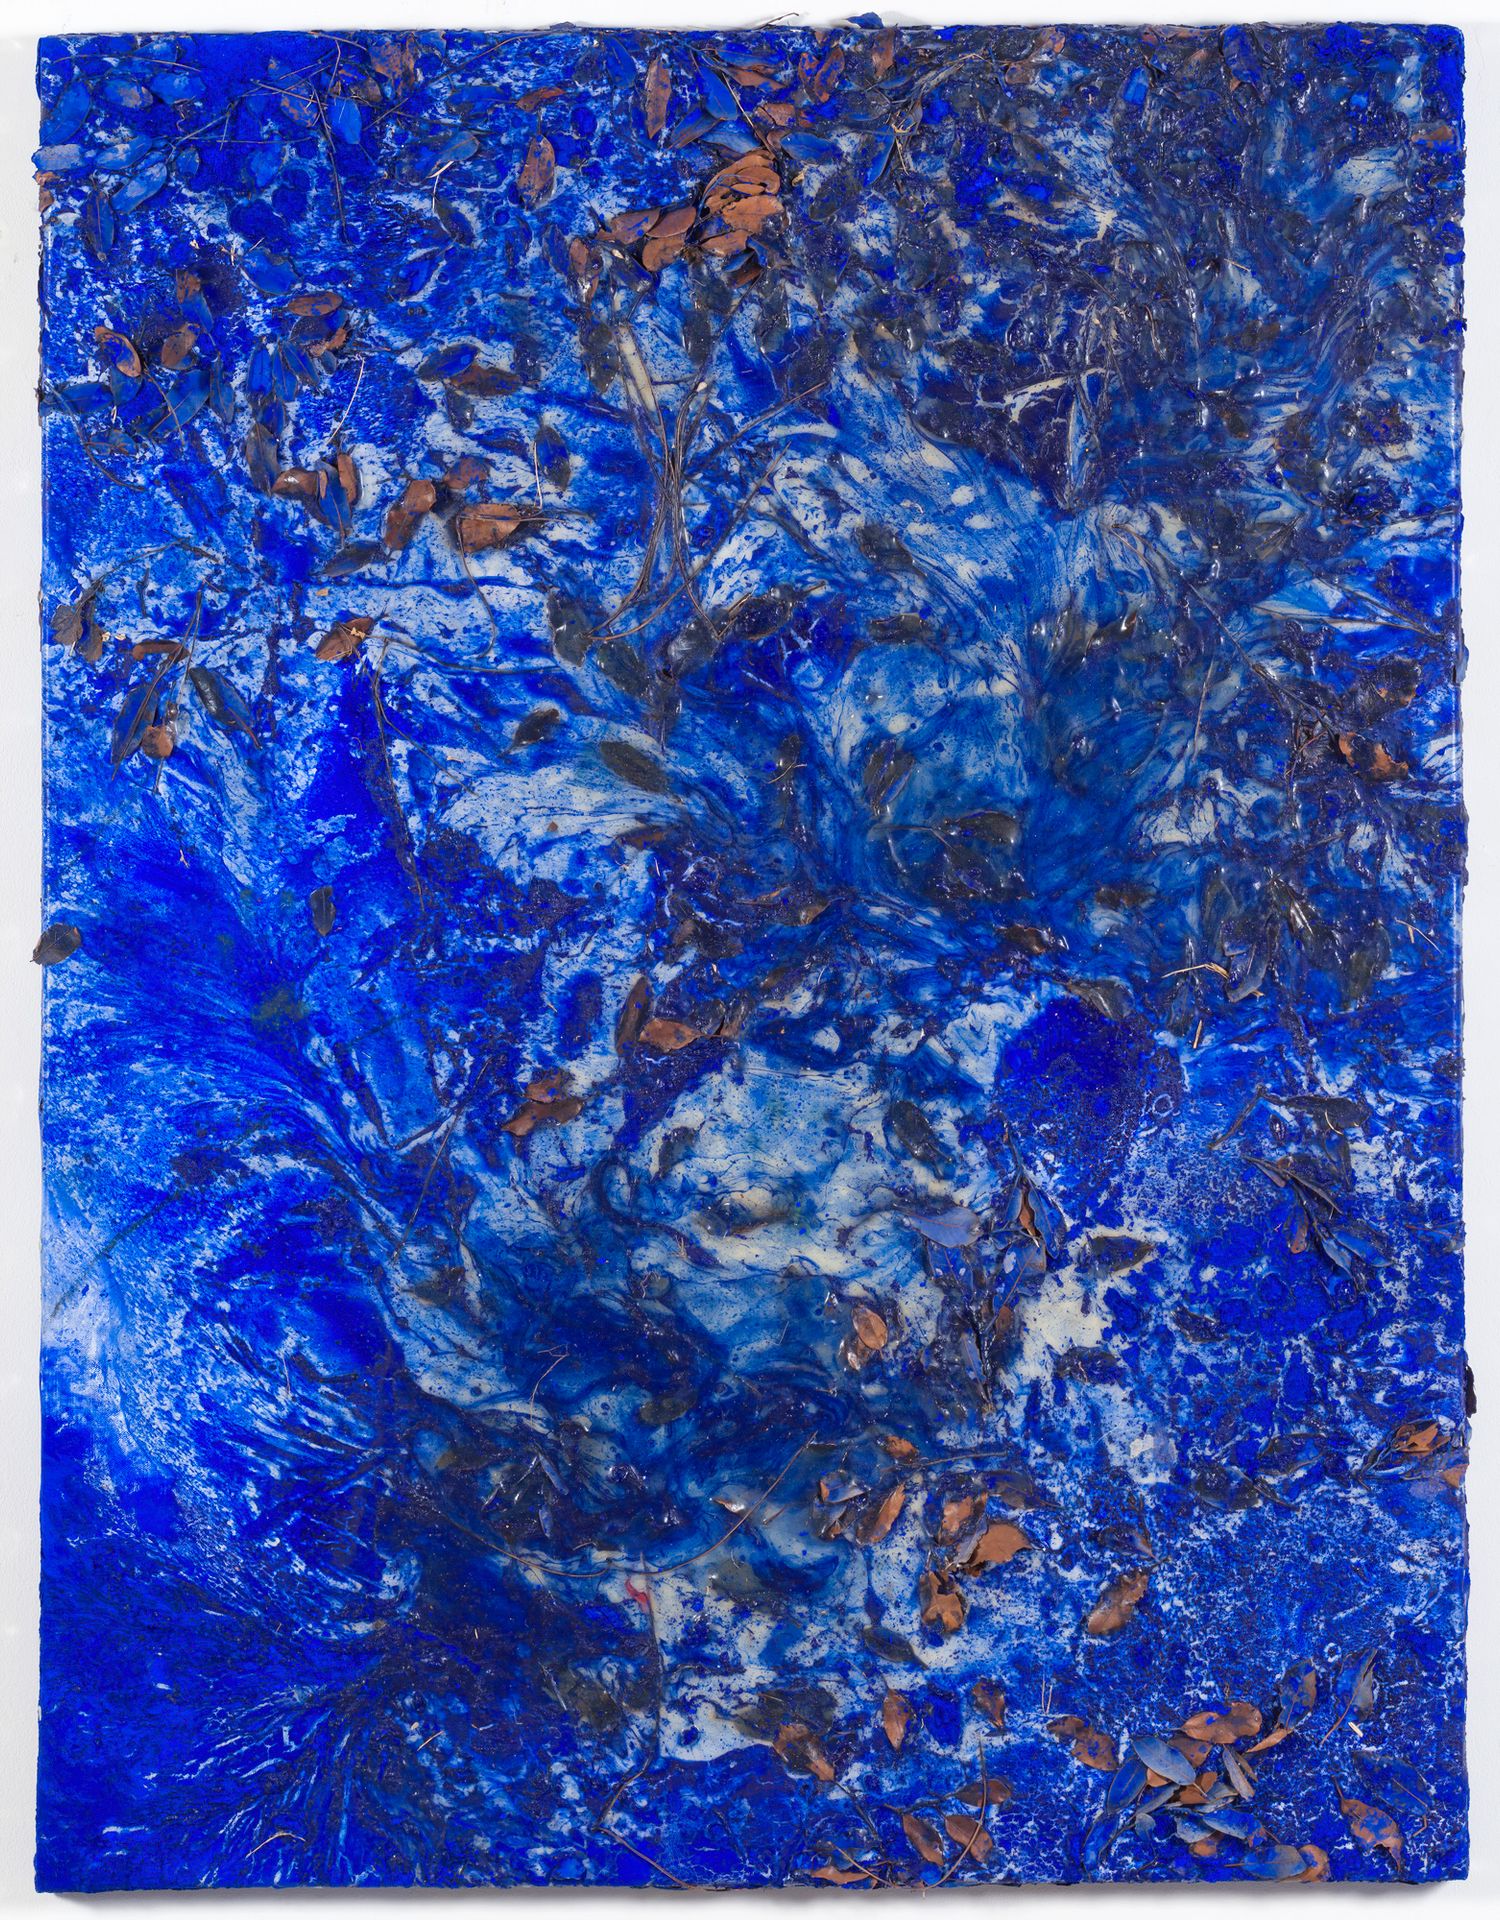 PHILIPPE PASTOR (né en 1961) AR 
Composición en azul 
2018

Hojas con incrustaci&hellip;